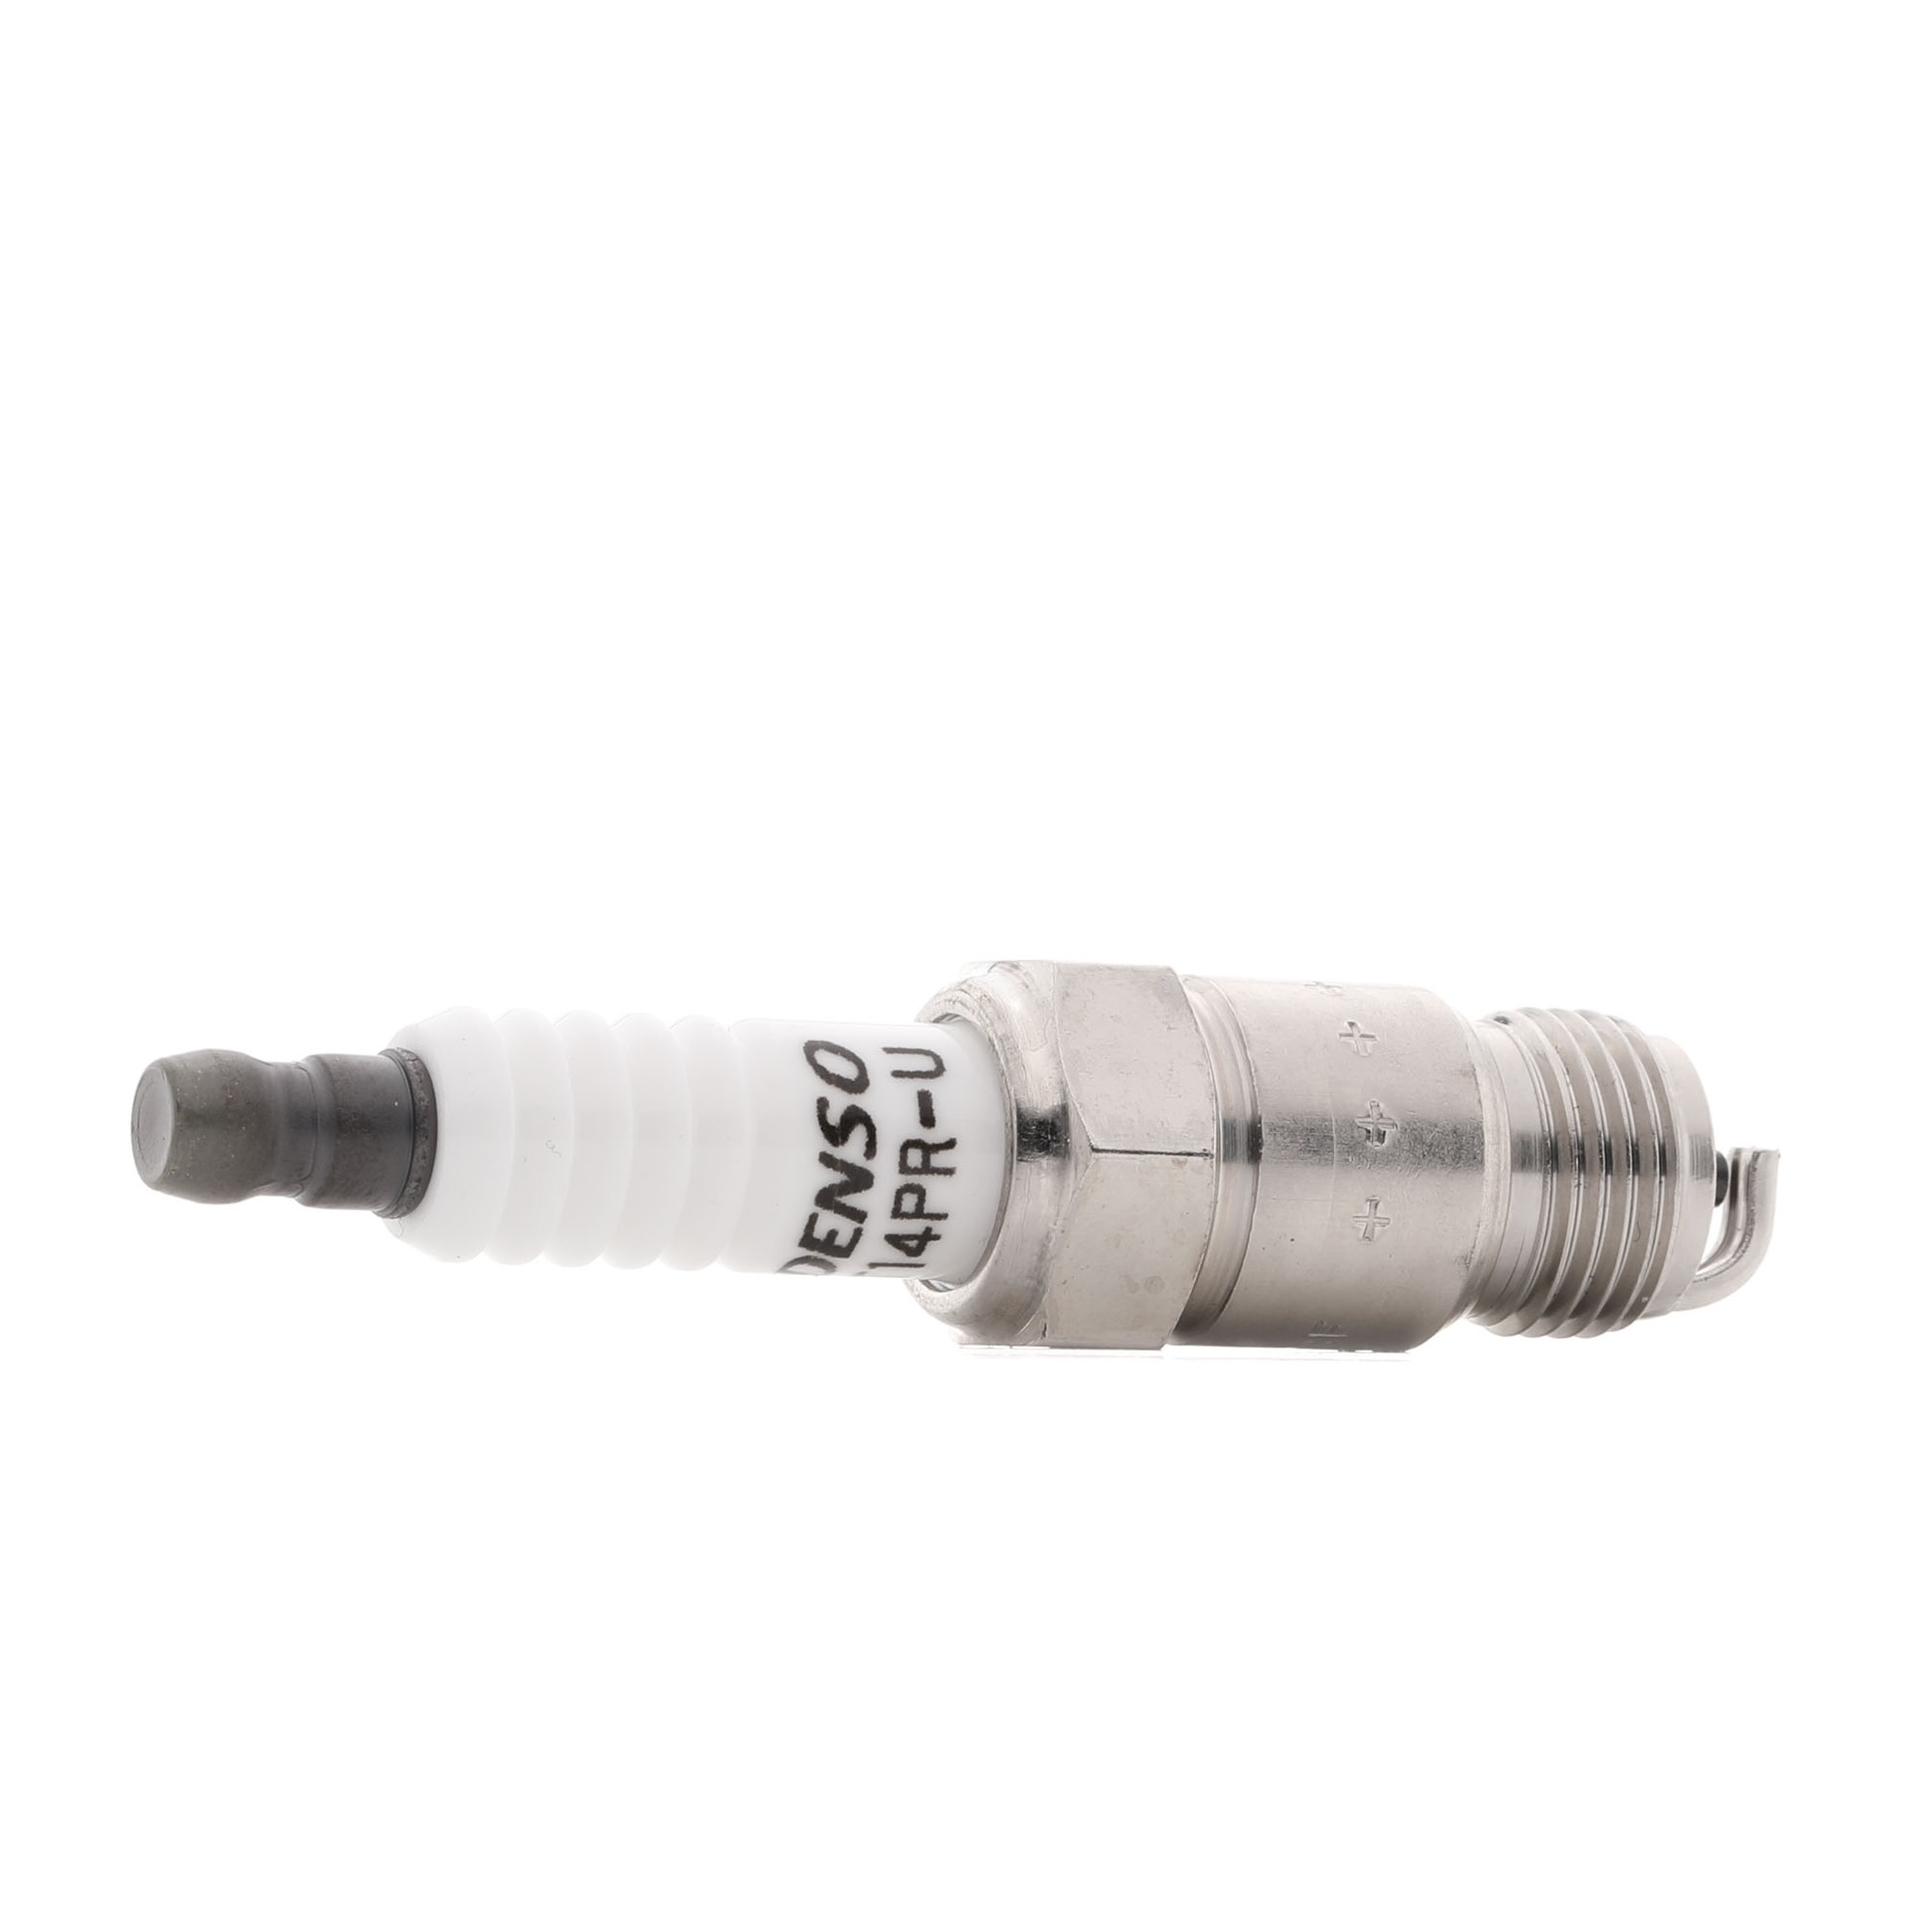 Original DENSO 5020 Spark plug set T14PR-U for CHEVROLET S10